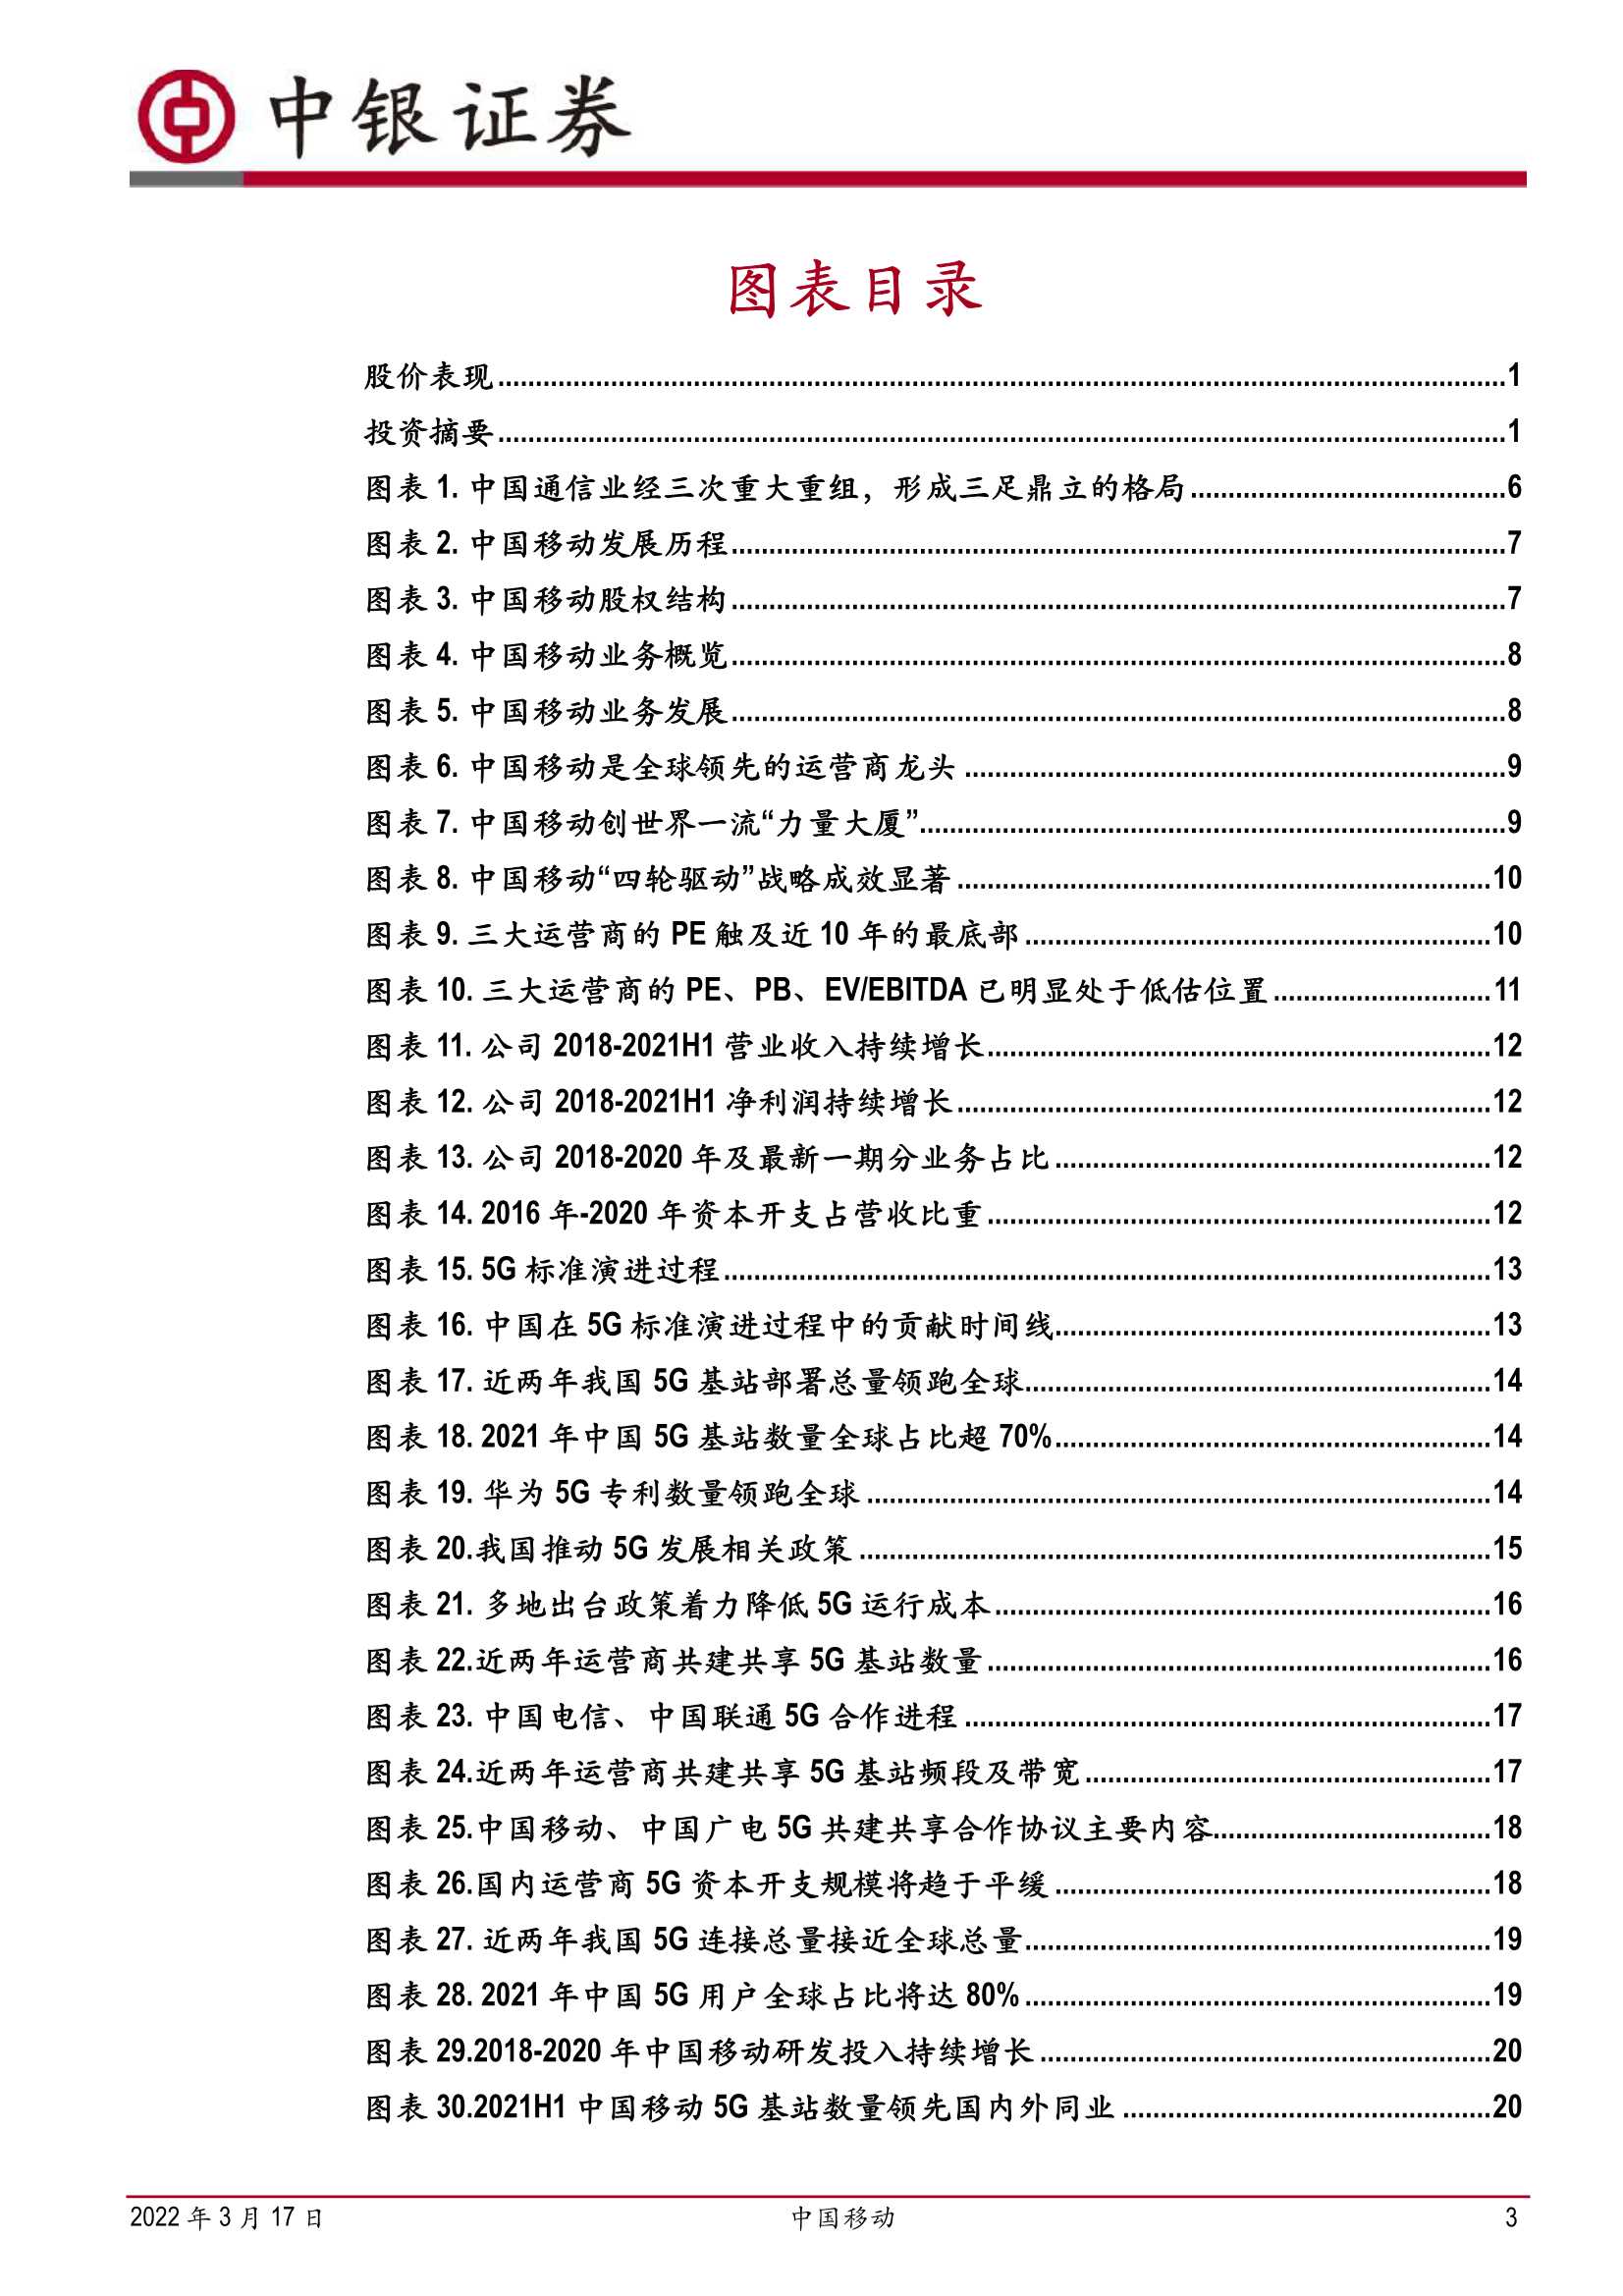 中银国际-中国移动-600941-运营商龙头重回A股，数智化转型开疆扩土-20220317-44页